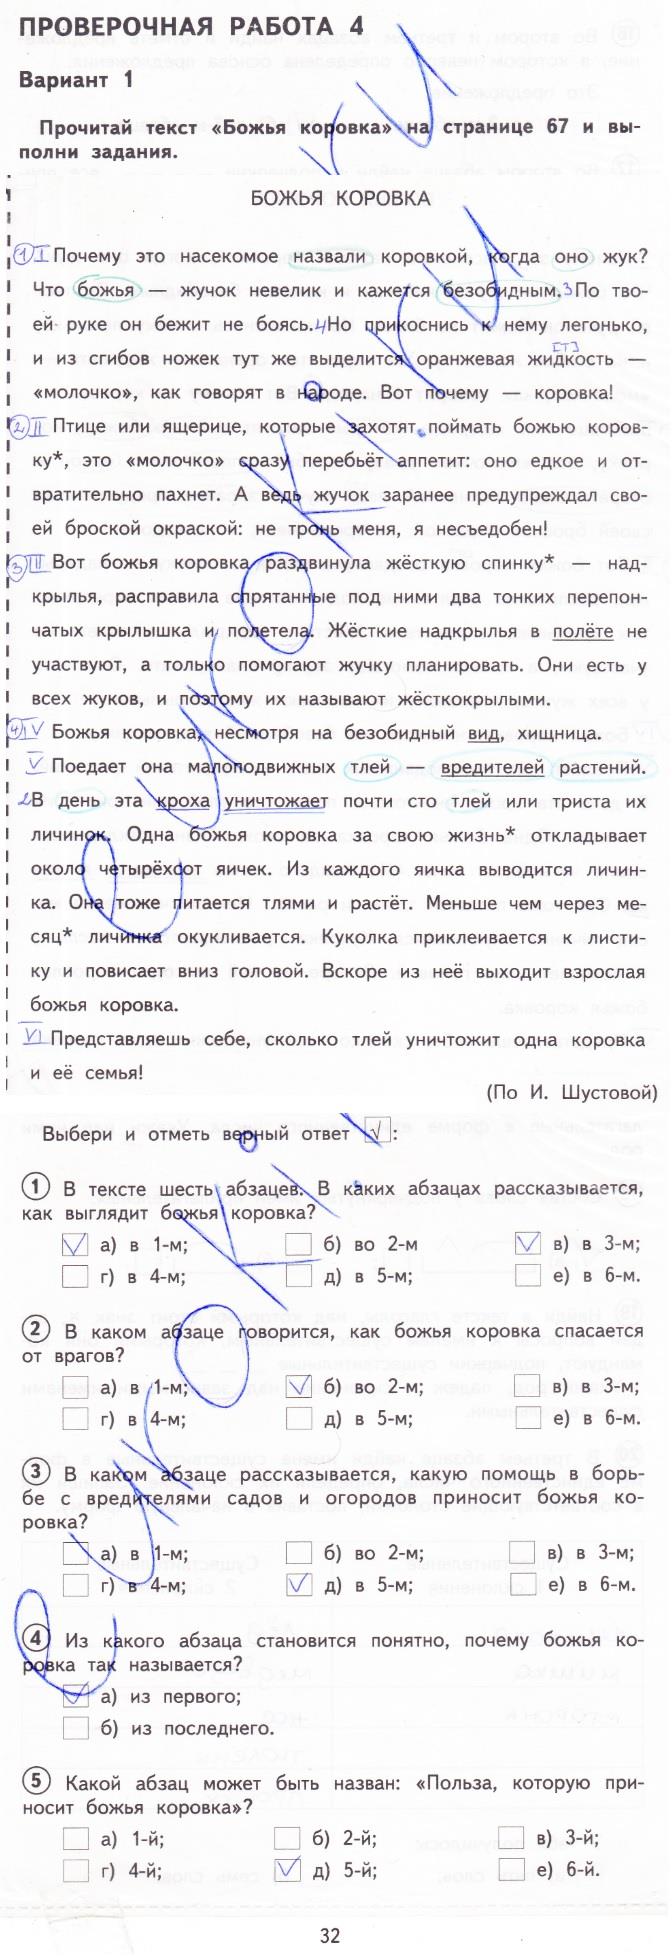 гдз 3 класс тетрадь для проверочных работ страница 32 русский язык Лаврова